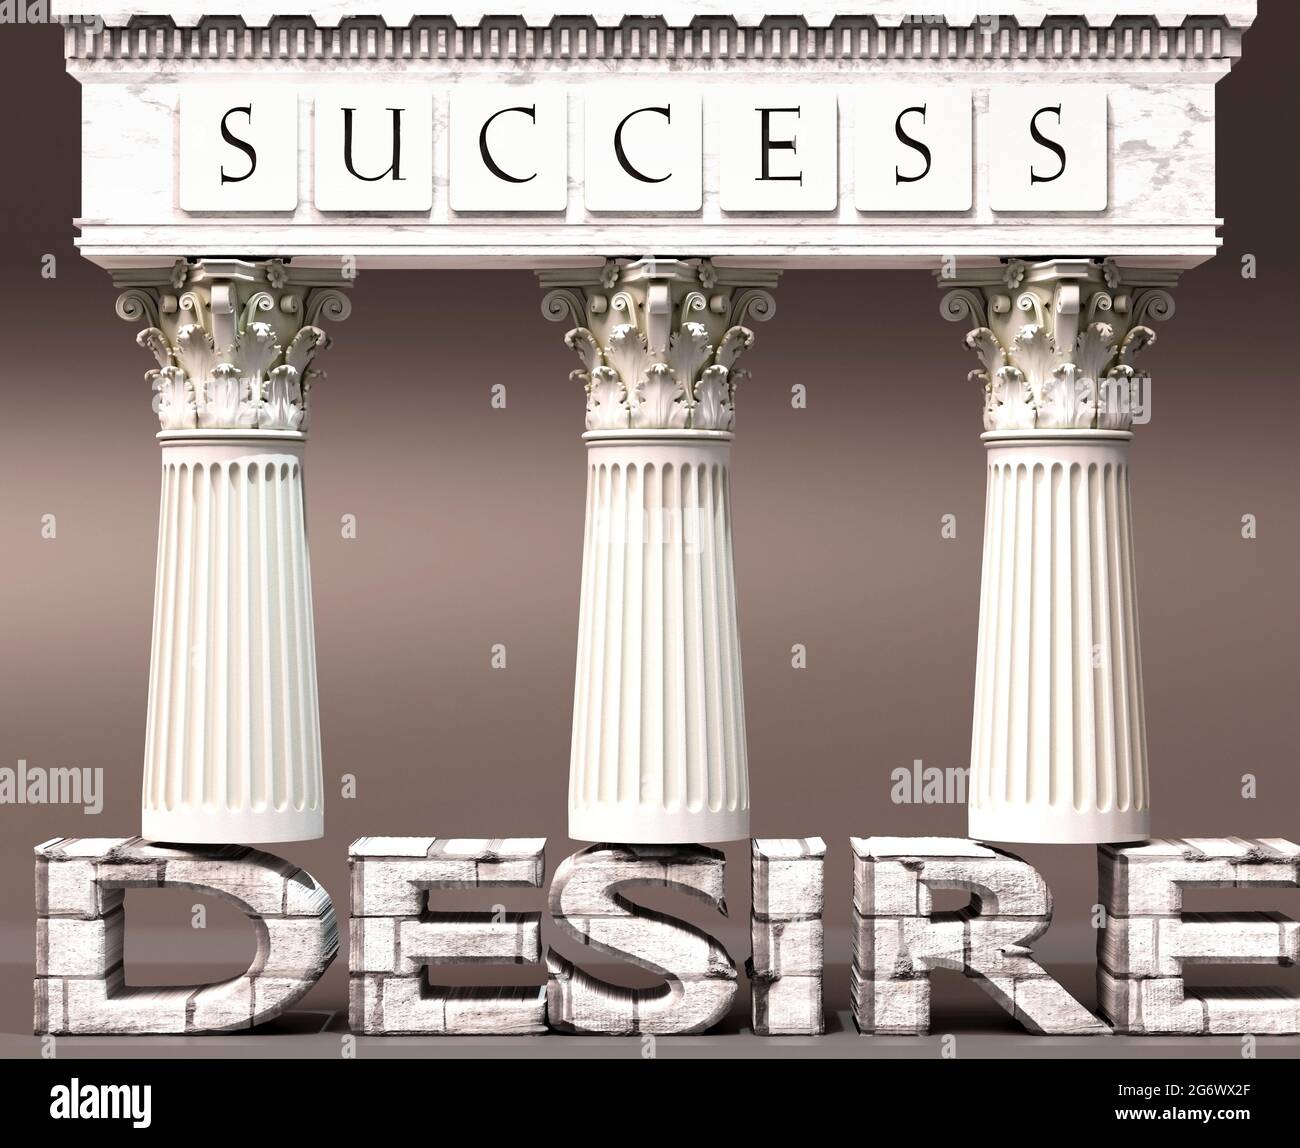 Wunsch als Grundlage für den Erfolg – symbolisiert durch Säulen des Erfolgs, unterstützt durch den Wunsch zu zeigen, dass es für das Erreichen von Zielen und Erfolg unerlässlich ist Stockfoto